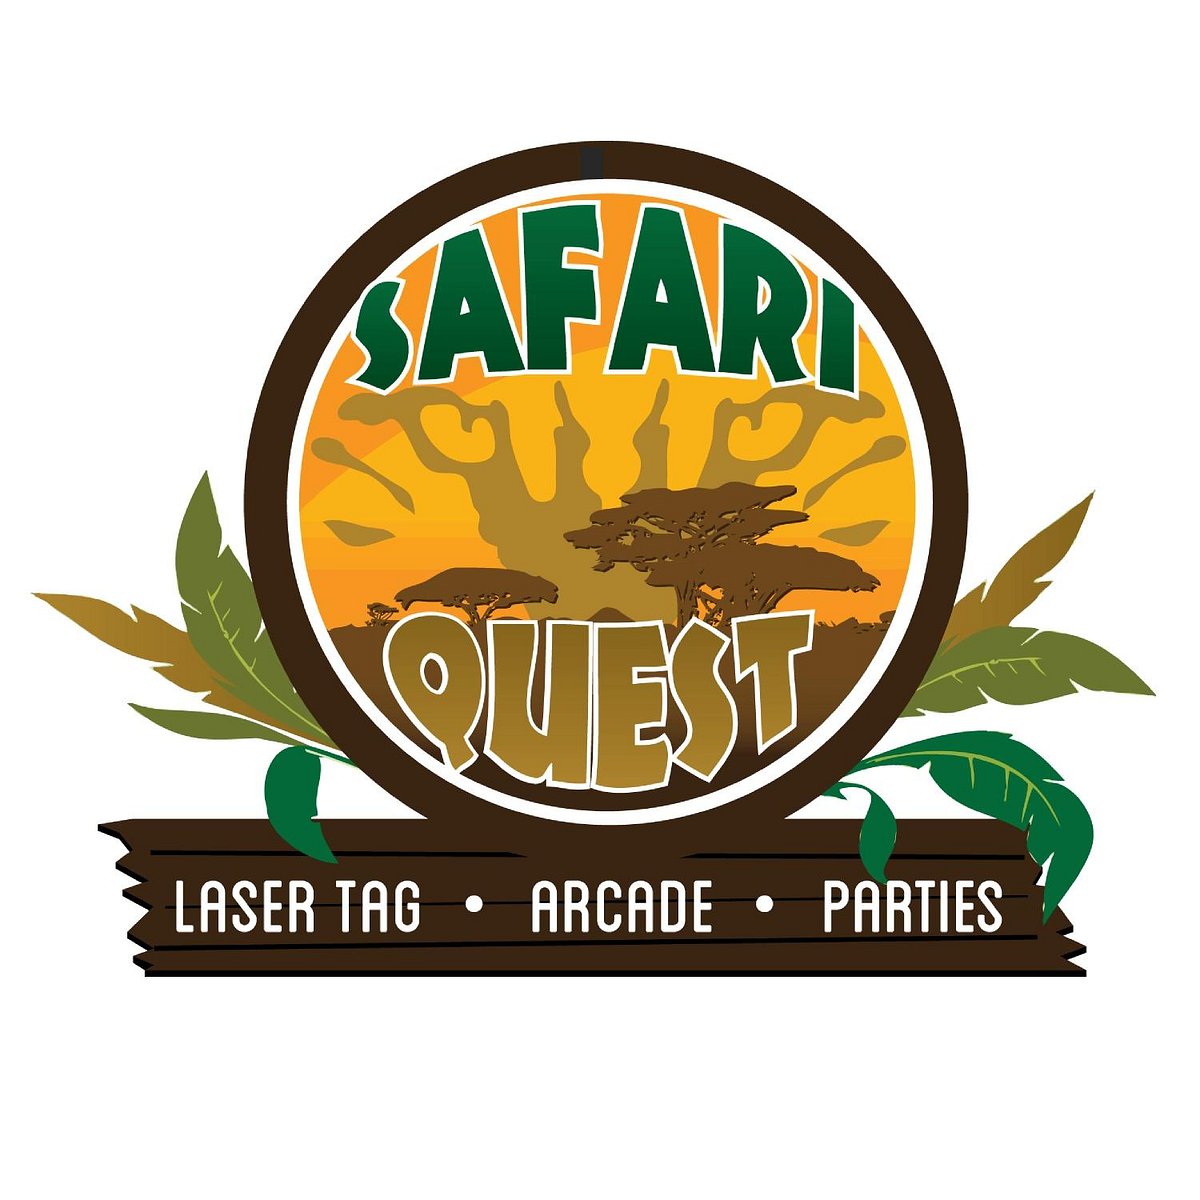 safari quest family fun center about